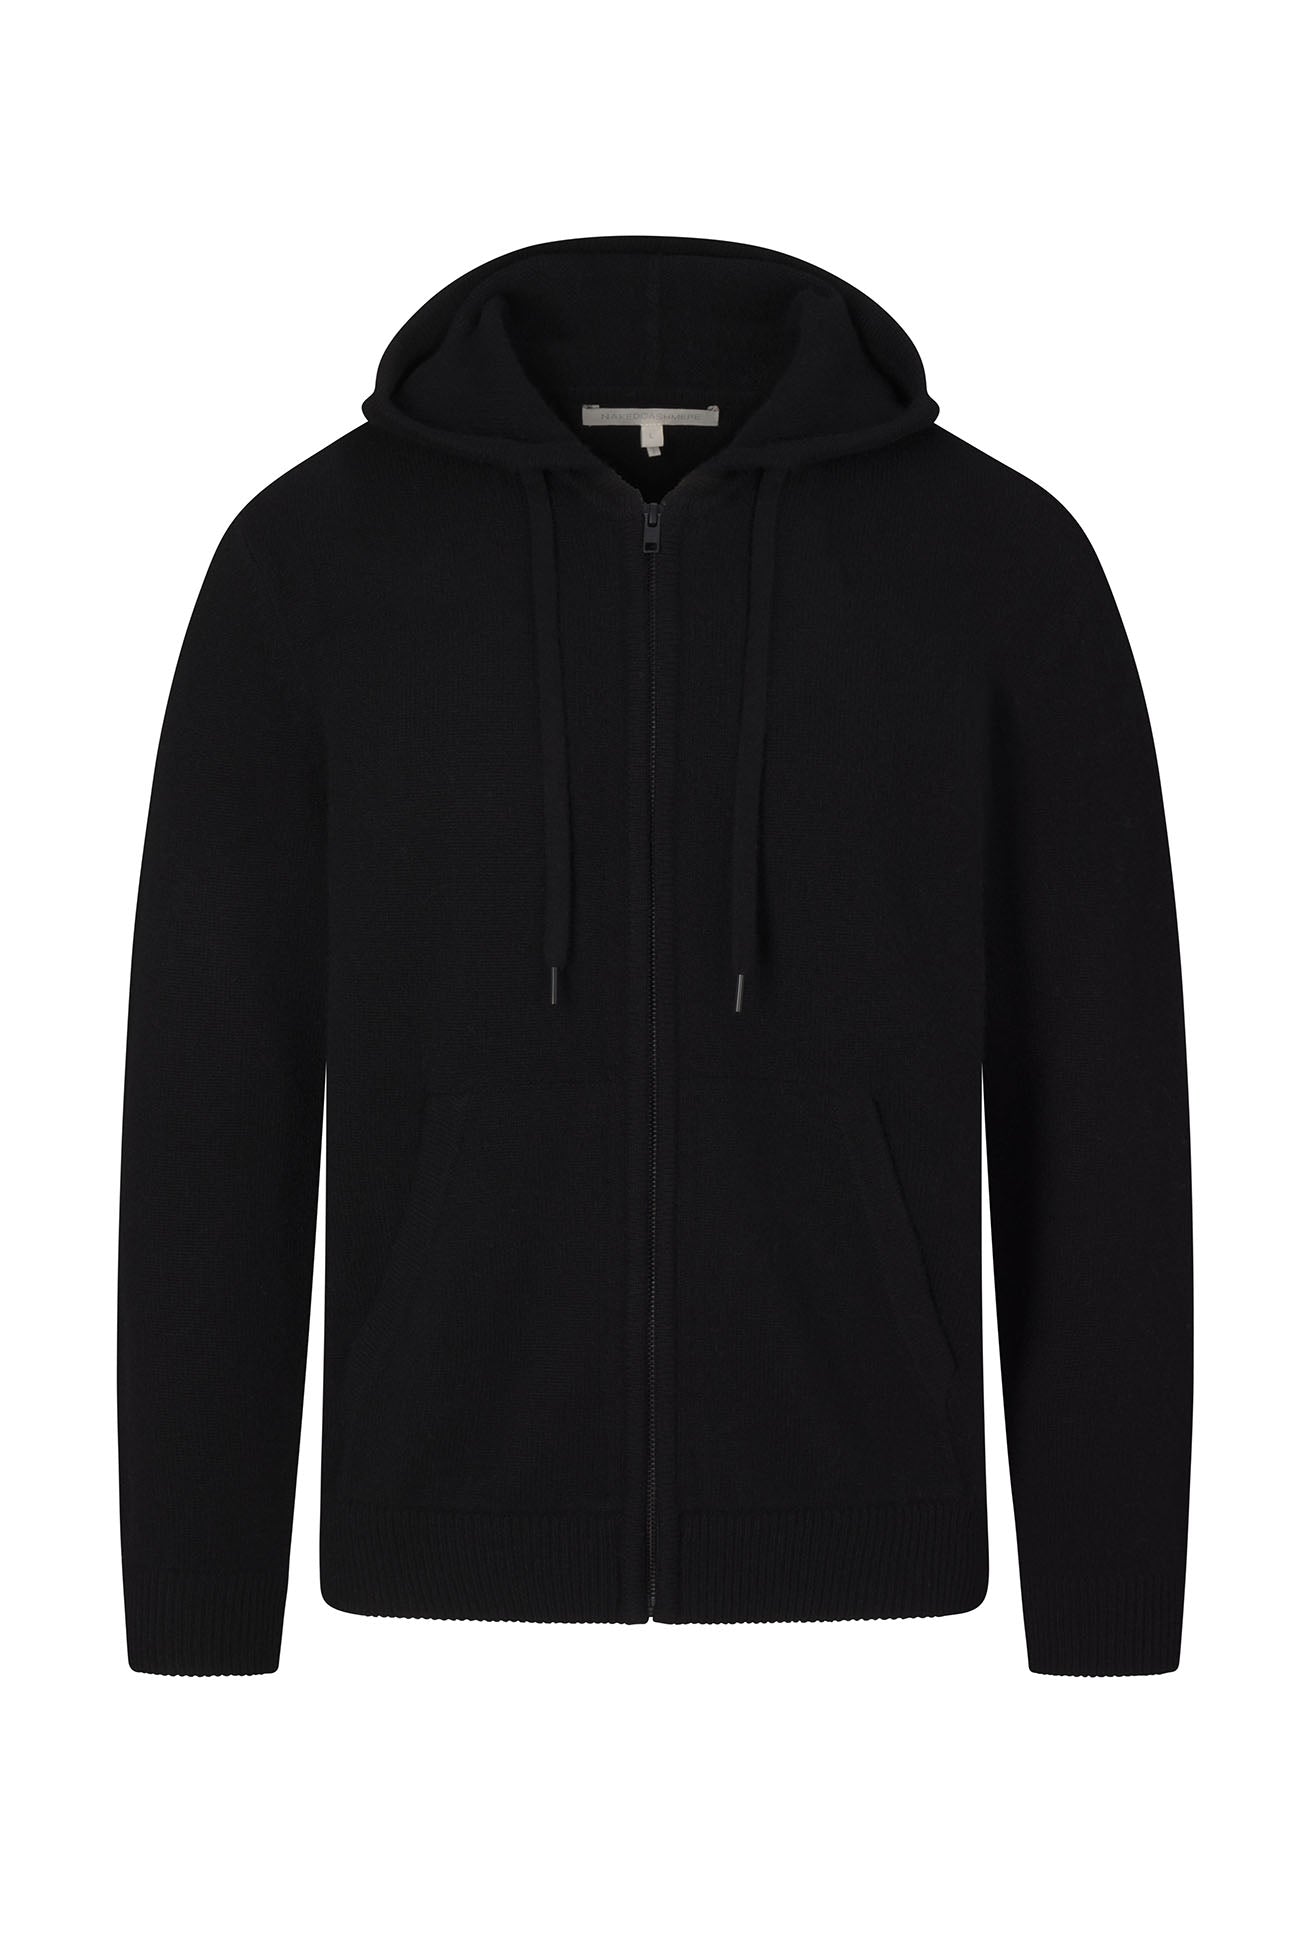 Nike Black Full Zip Hoodie | Cavs Team Shop